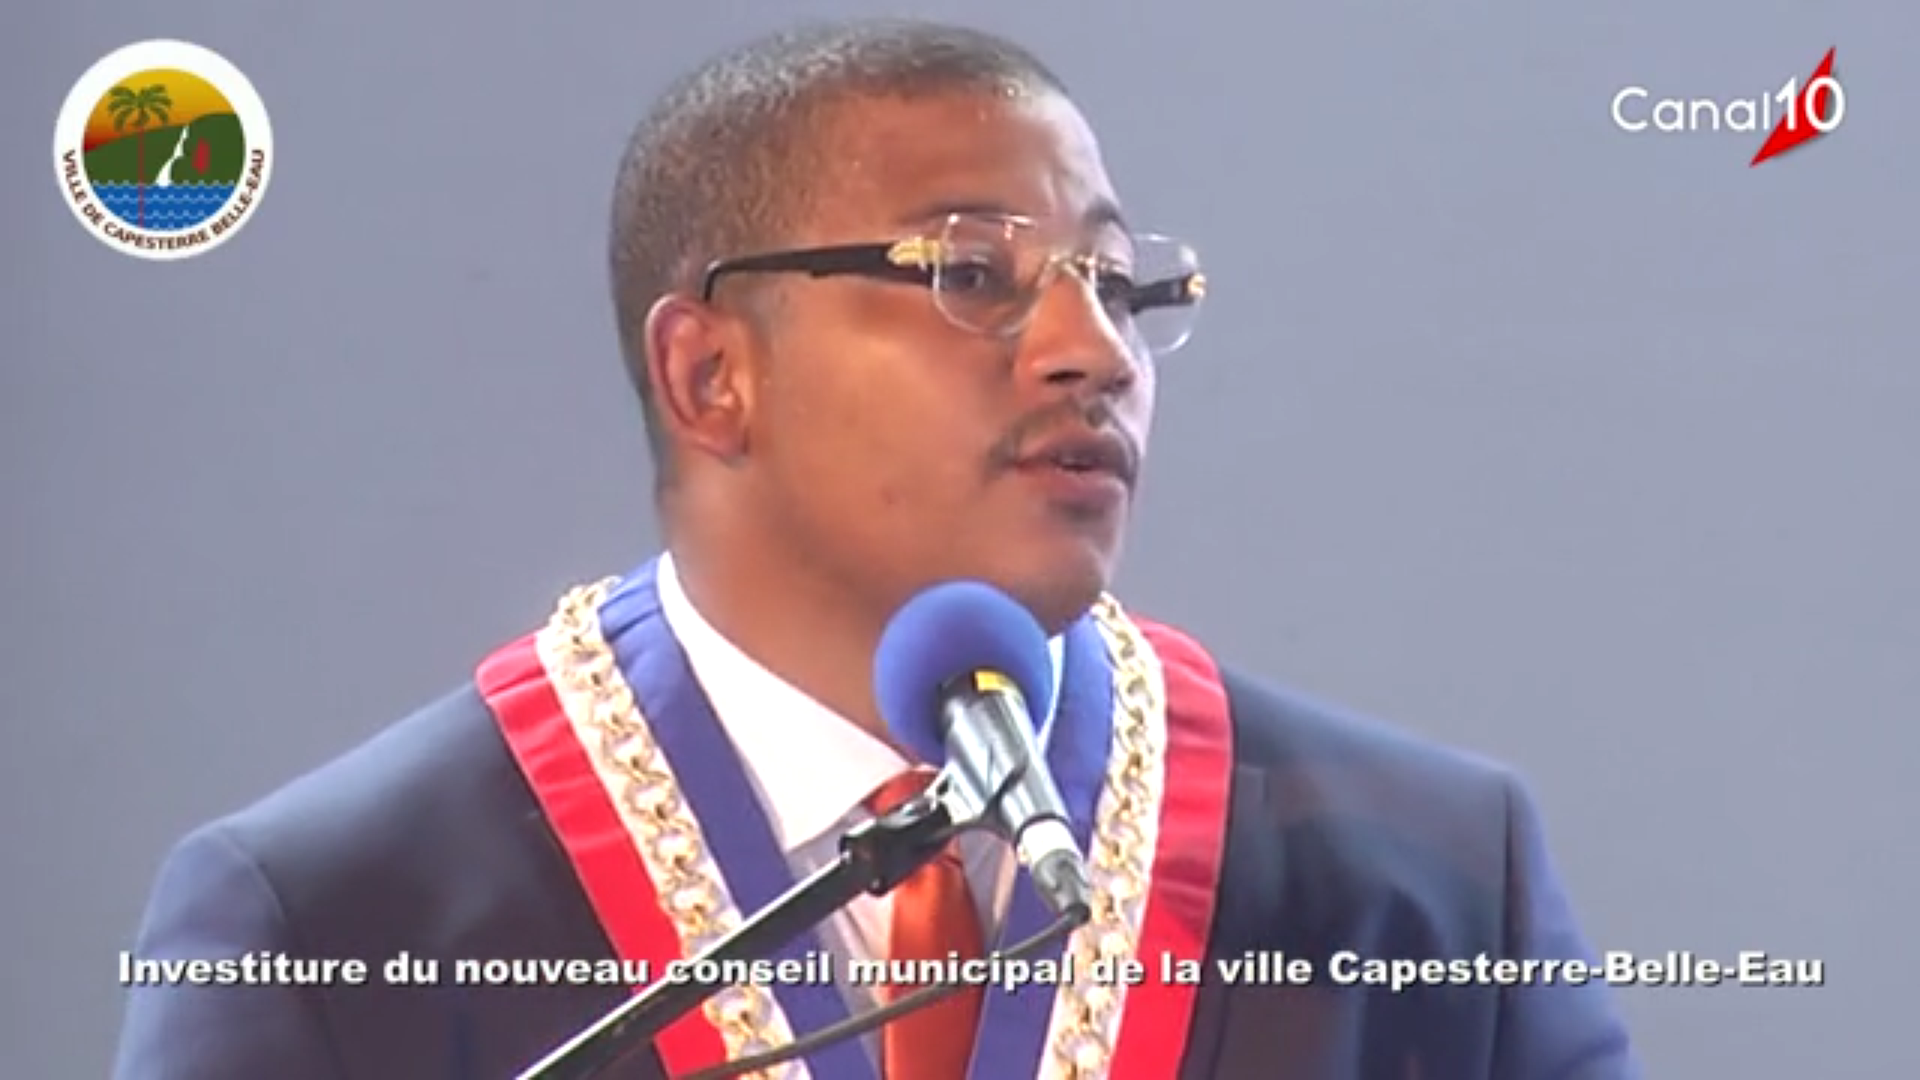 [Vidéo] Oews Guadeloupe. Investiture de Jean Philippe COURTOIS nouveau Maire de Capesterre Belle eau (images canal 10)